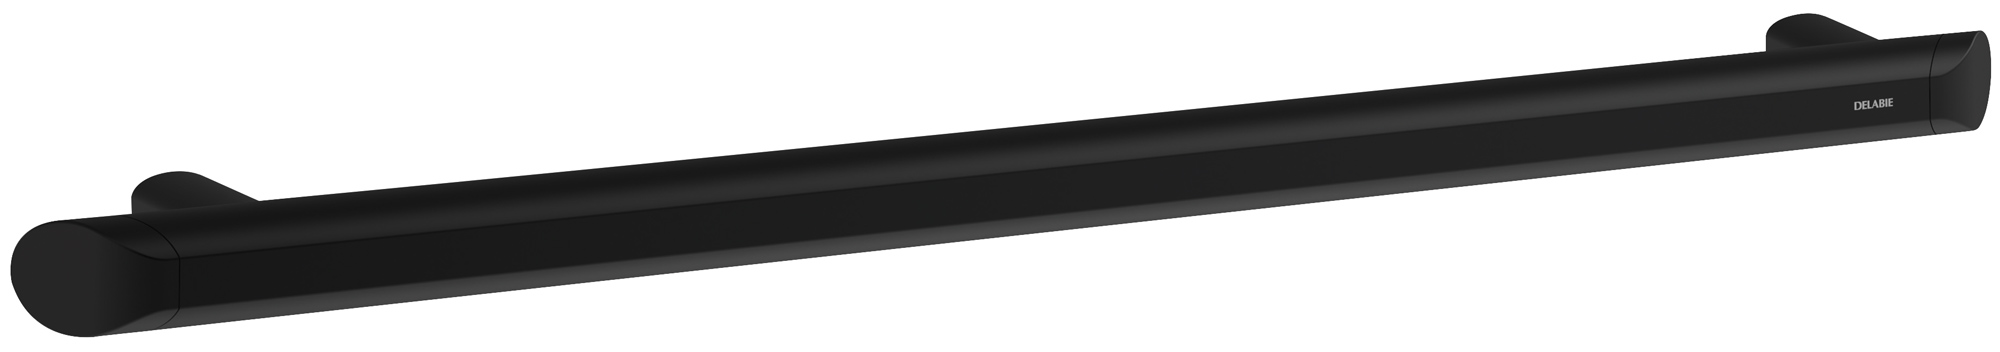 DELABIE Be-Line exkluzív egyenes kapaszkodó, D=35mm alumínium, matt fekete, 600mm